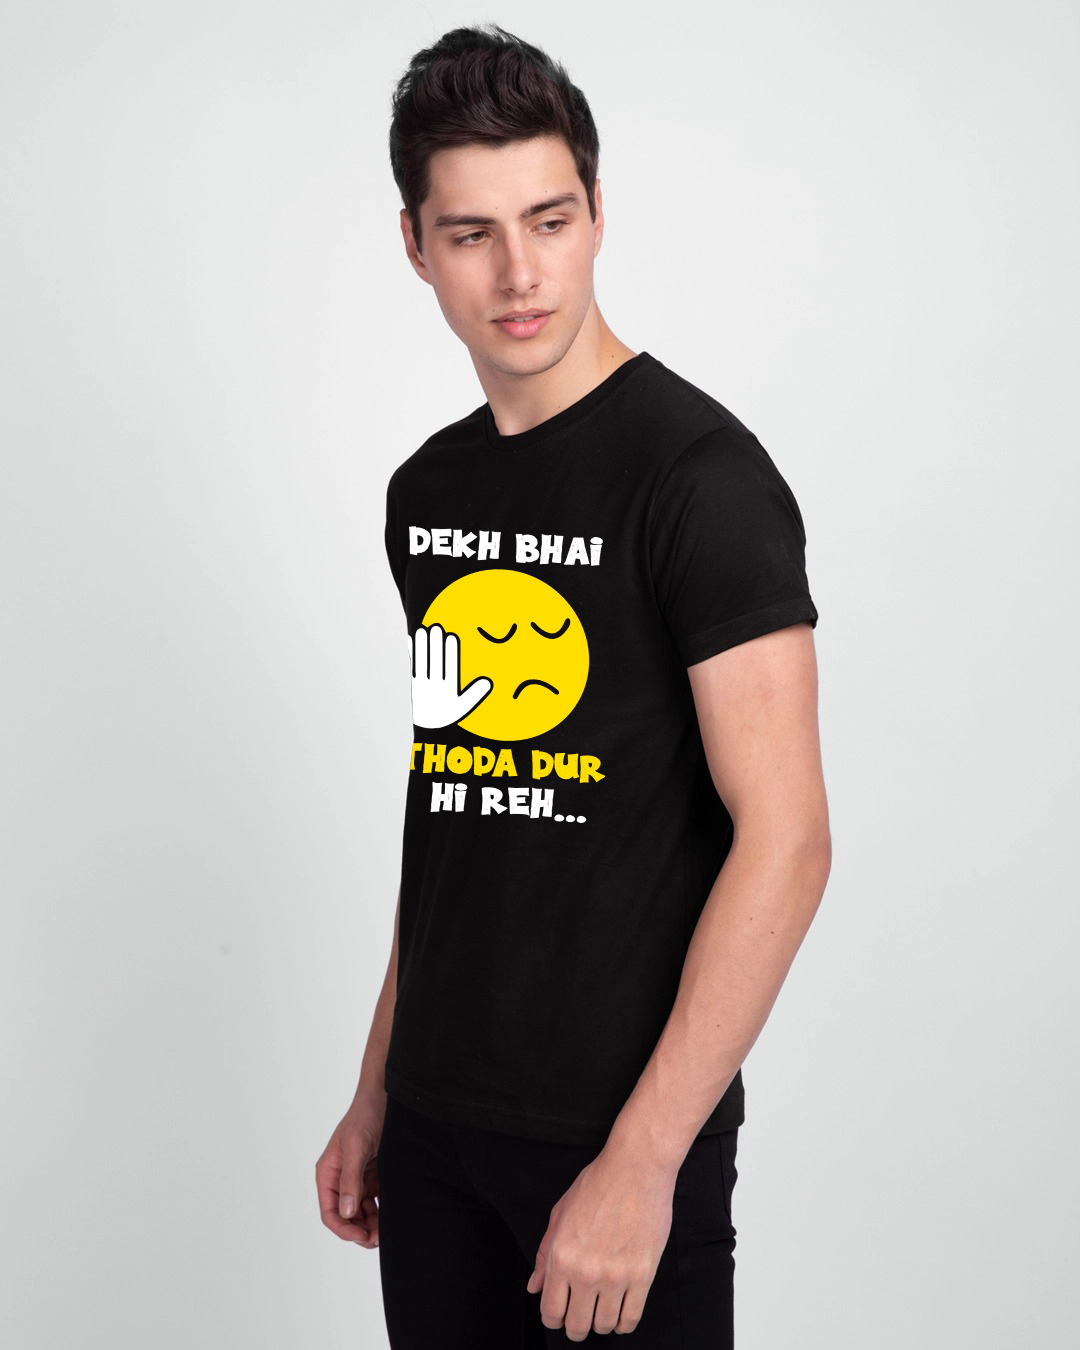 Dekh Bhai Thoda Dur hi Rah Half Sleeve T-Shirt for Men - ambussh.com